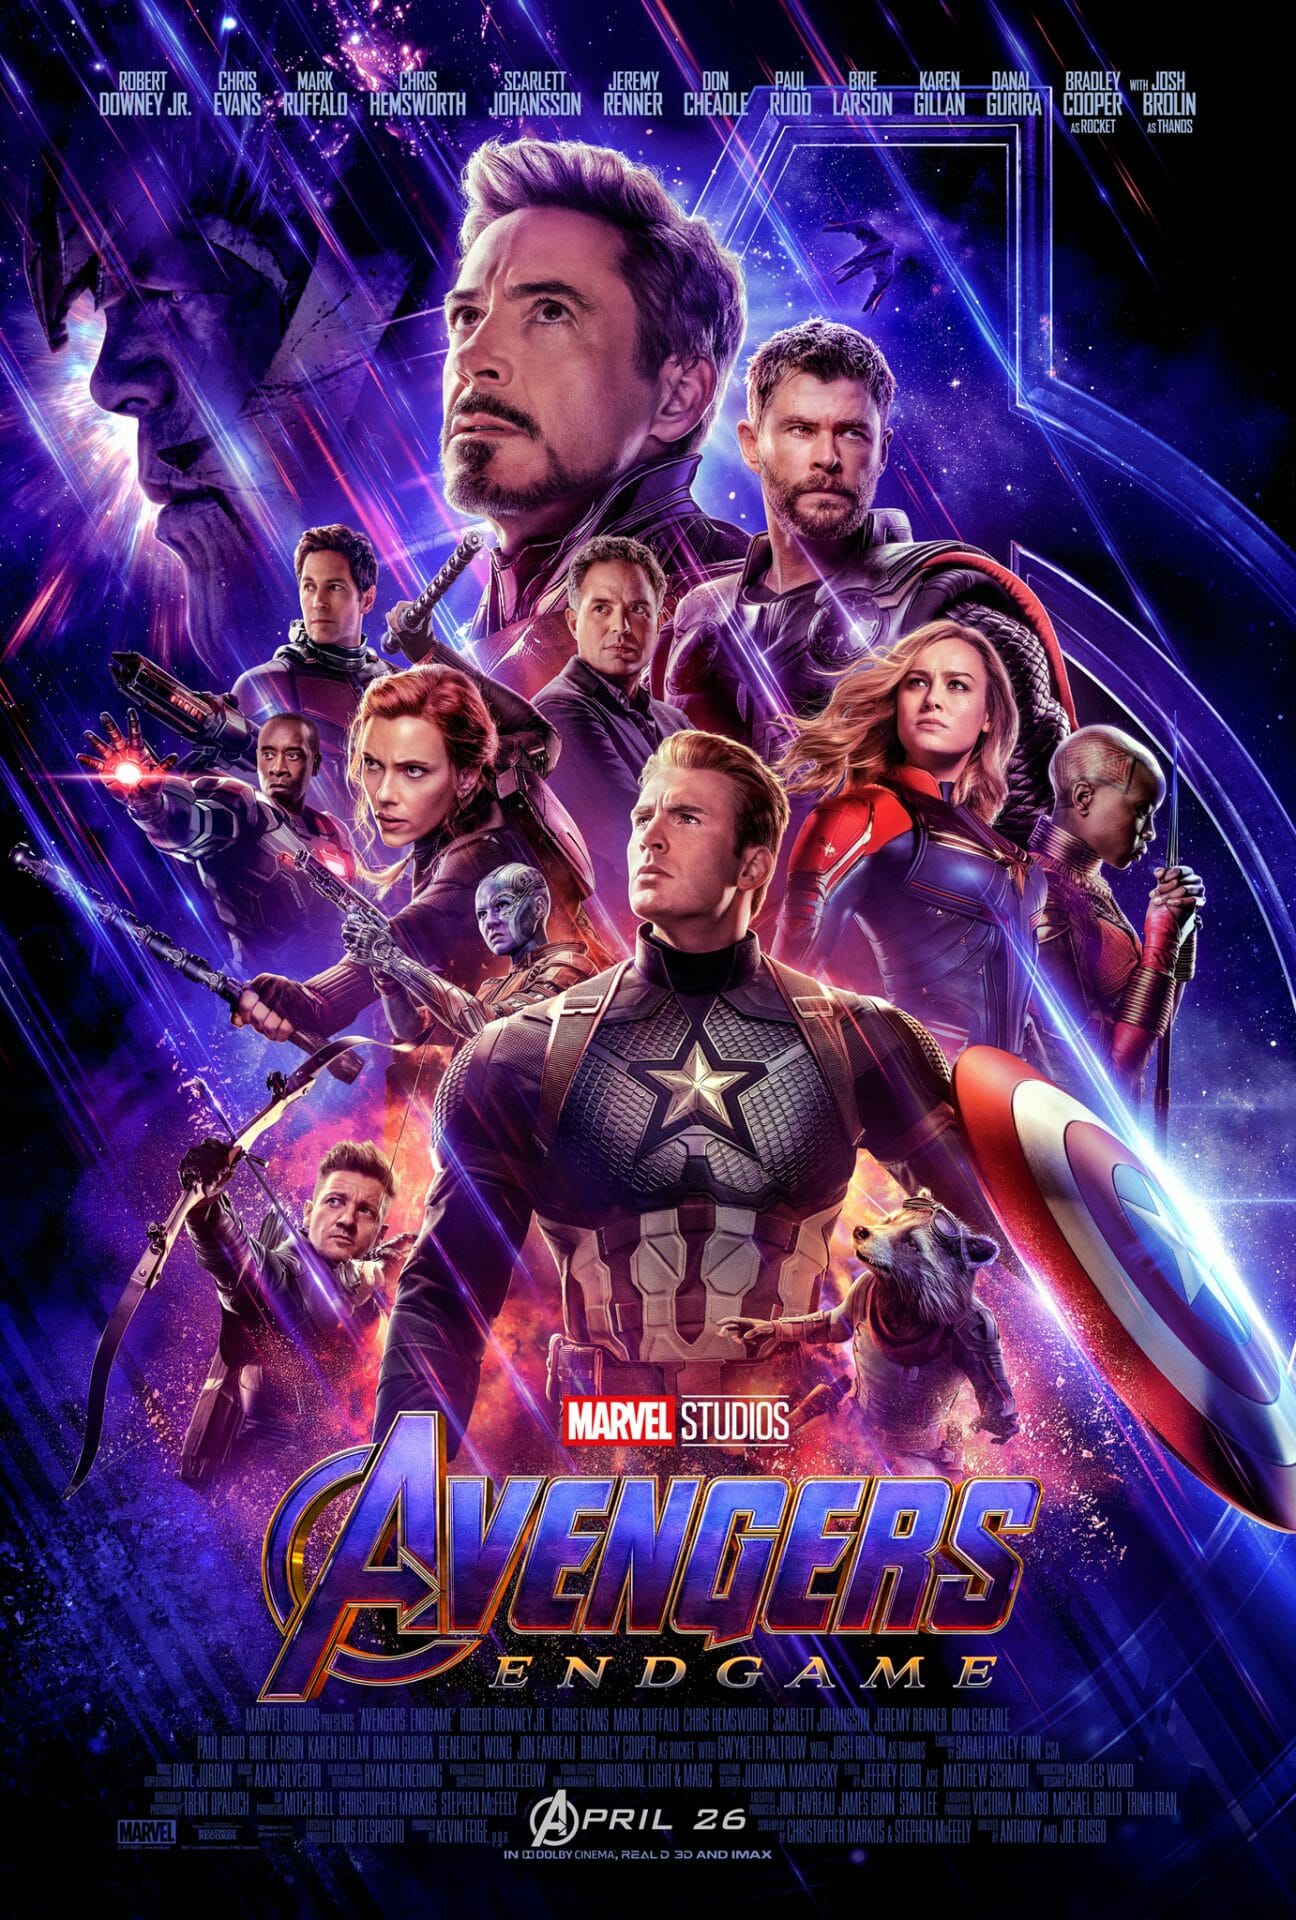 Daily Framed 113 Movie Answer - Avengers Endgame